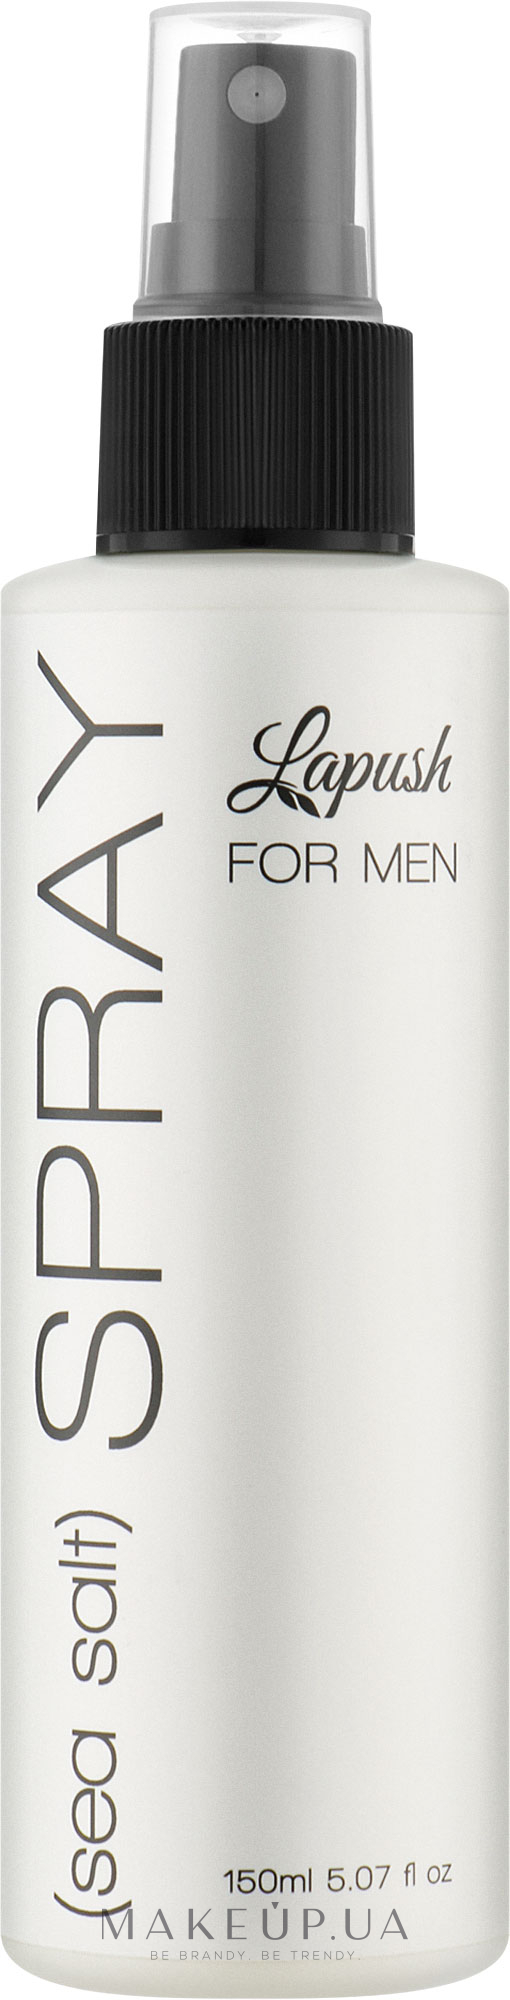 Мужской солевой спрей для волос - Lapush For Men Sea Salt Spray — фото 150ml